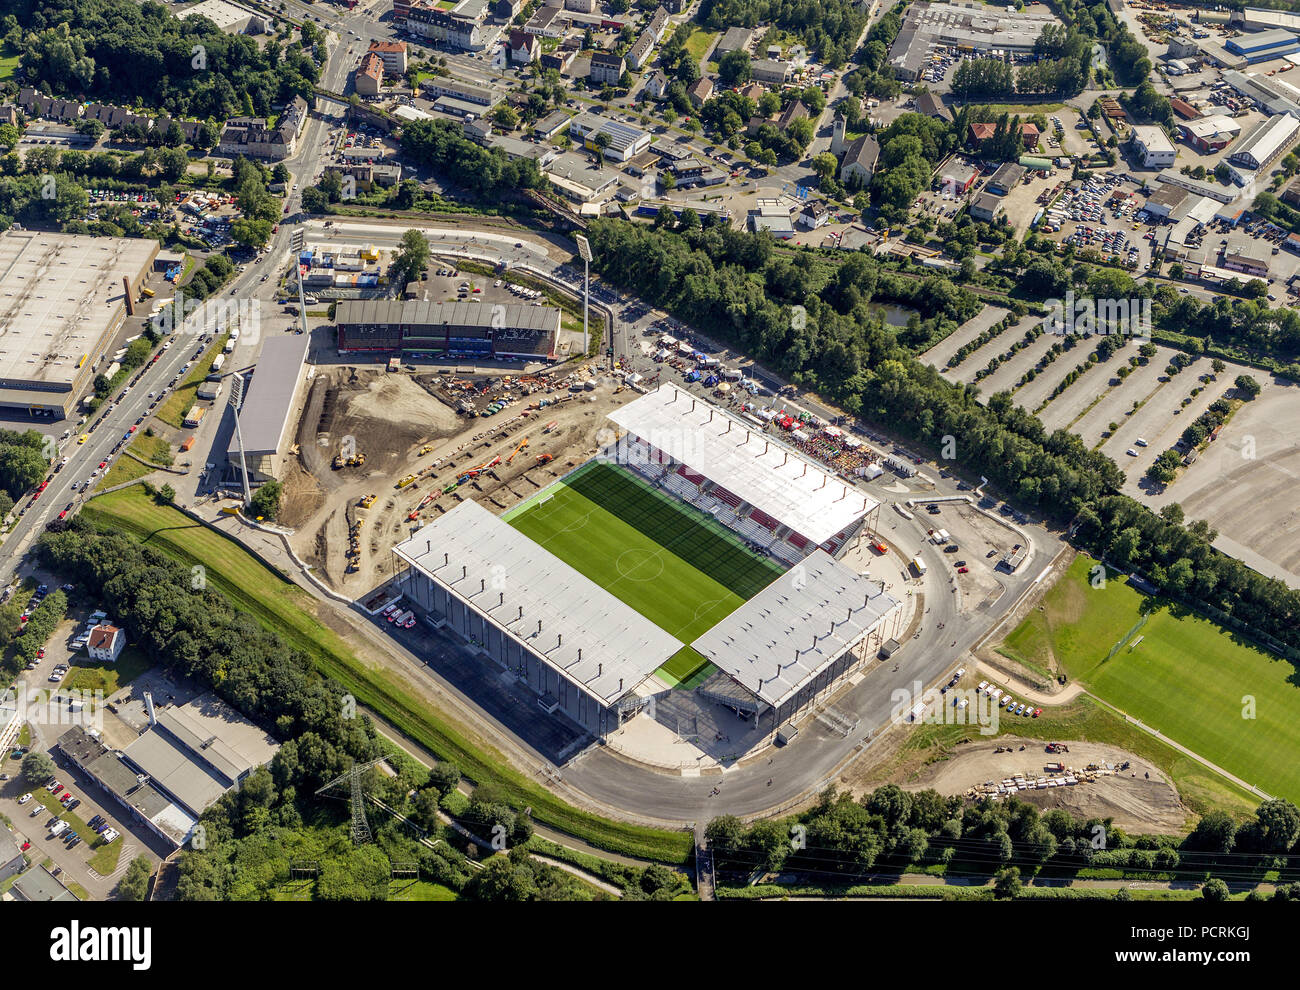 Luftbild, nach der Eröffnung des Essener Stadion, Rot-Weiss Essen, Stadion an der Hafenstraße, Essen, Ruhrgebiet, Nordrhein-Westfalen, Deutschland, Europa Stockfoto